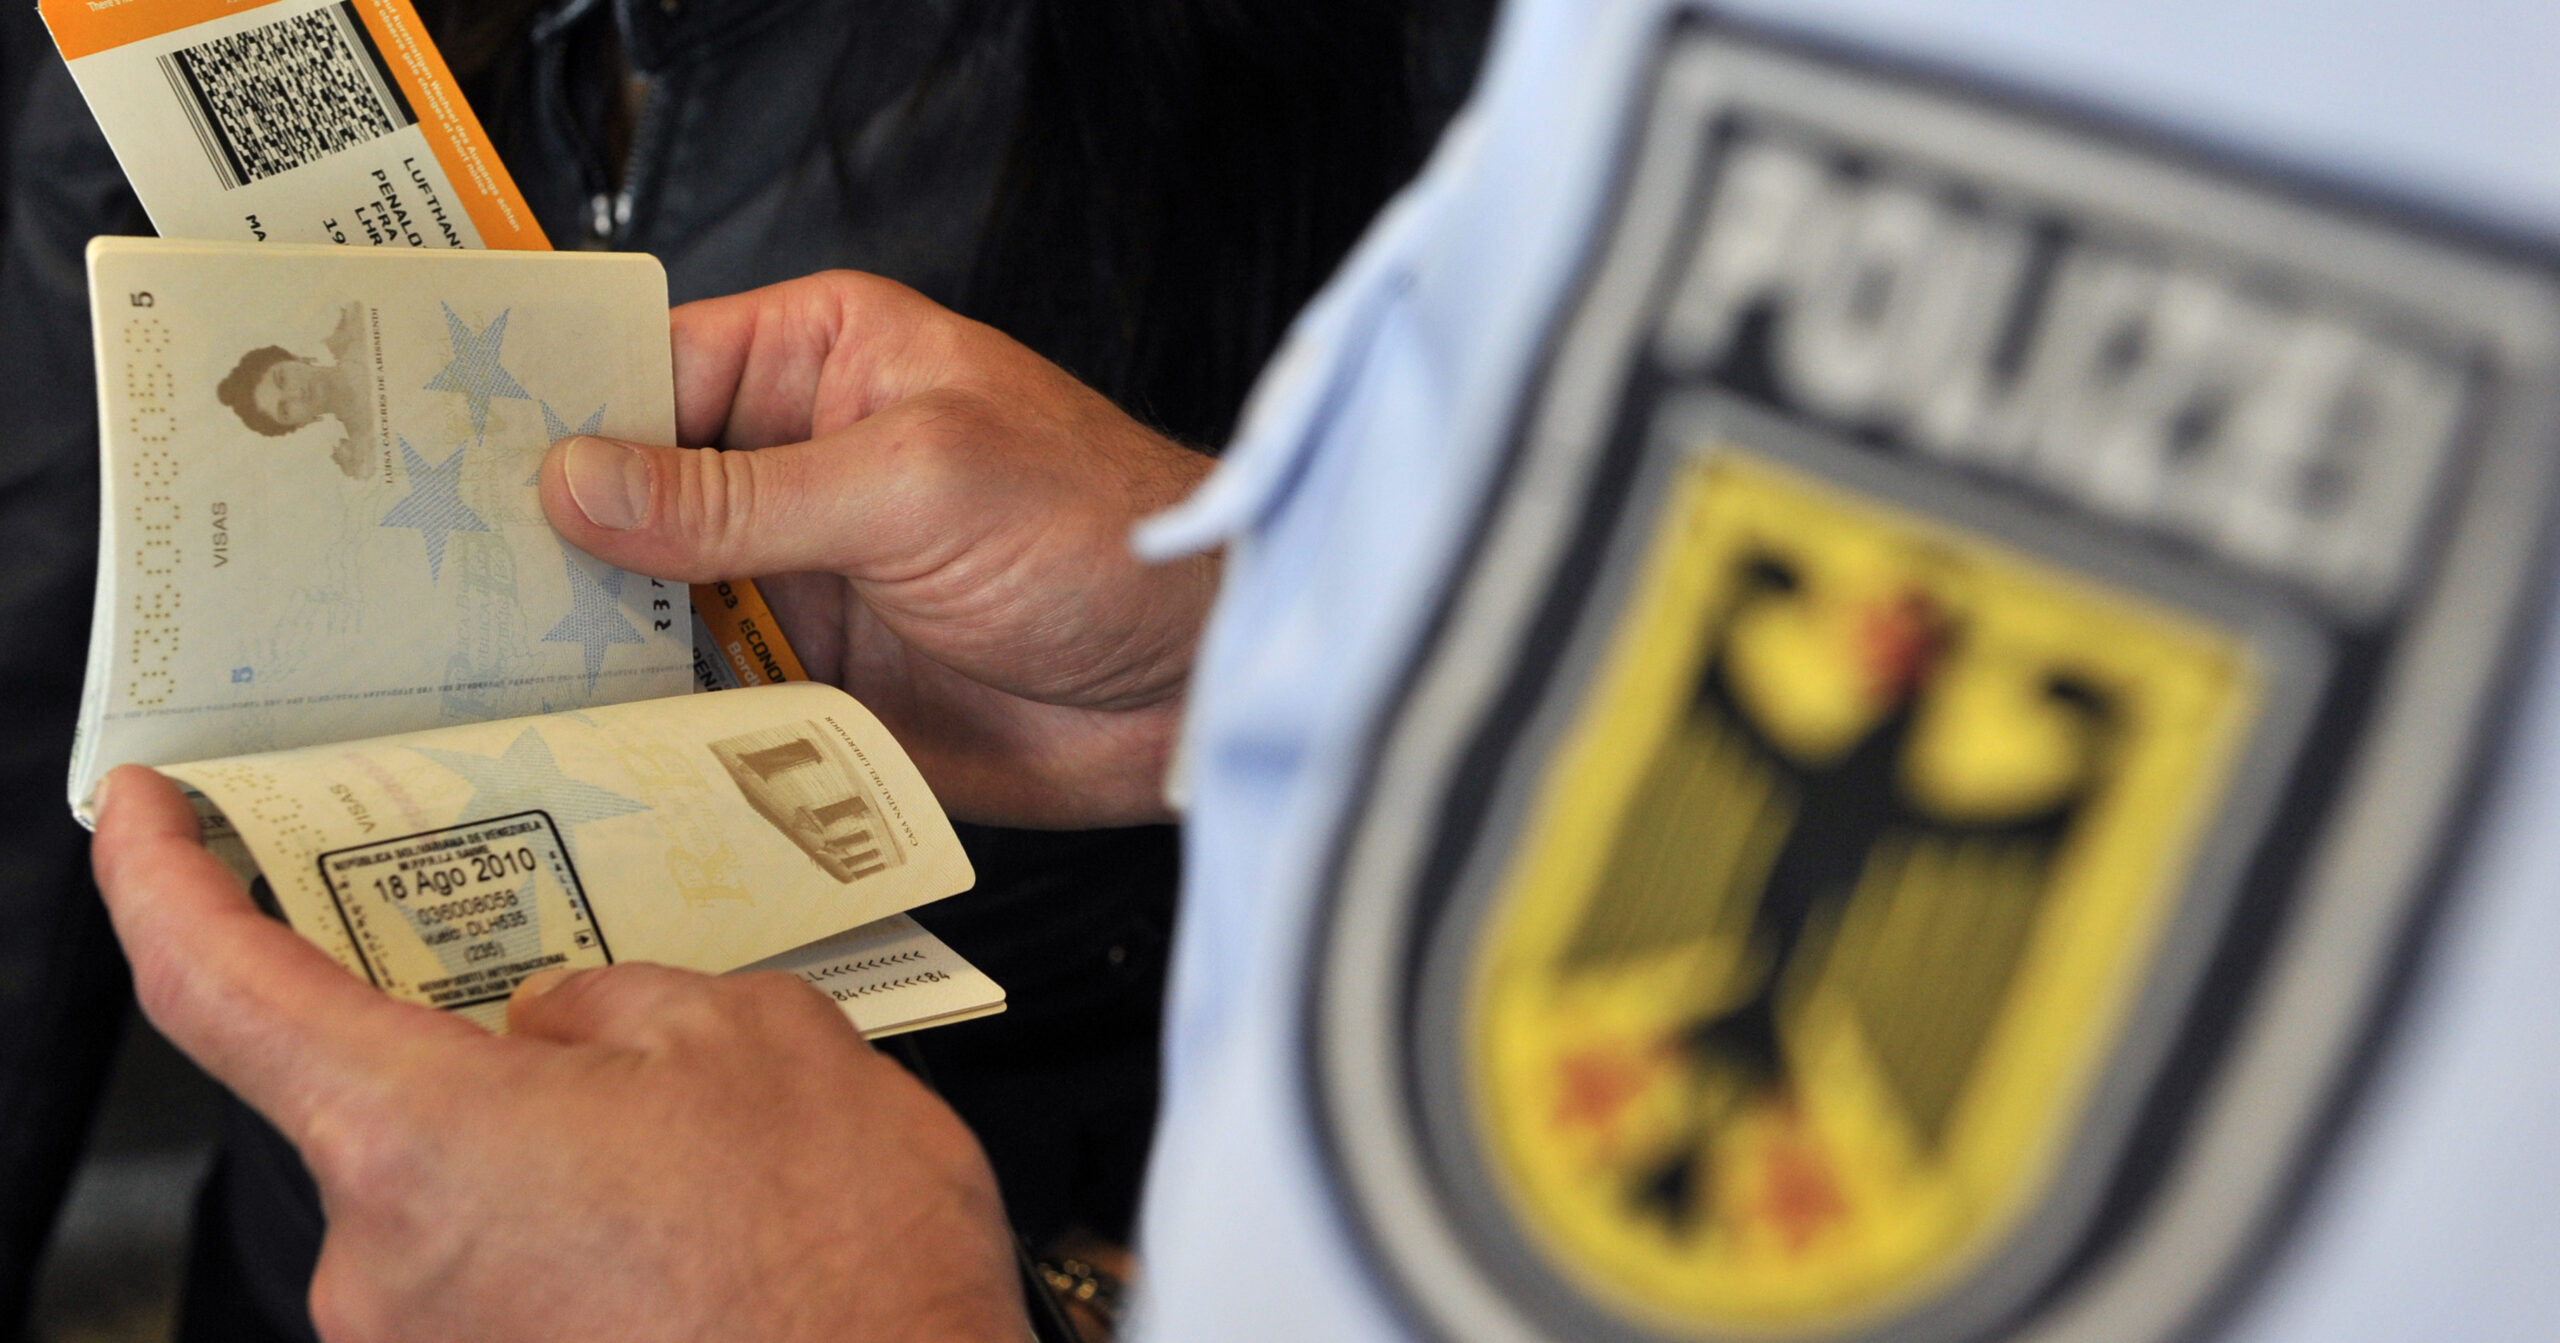 Bei der Passkontrolle entdeckten Bundespolizisten, dass ein Haftbefehl gegen die Frau vorlag. (Symbolfoto)